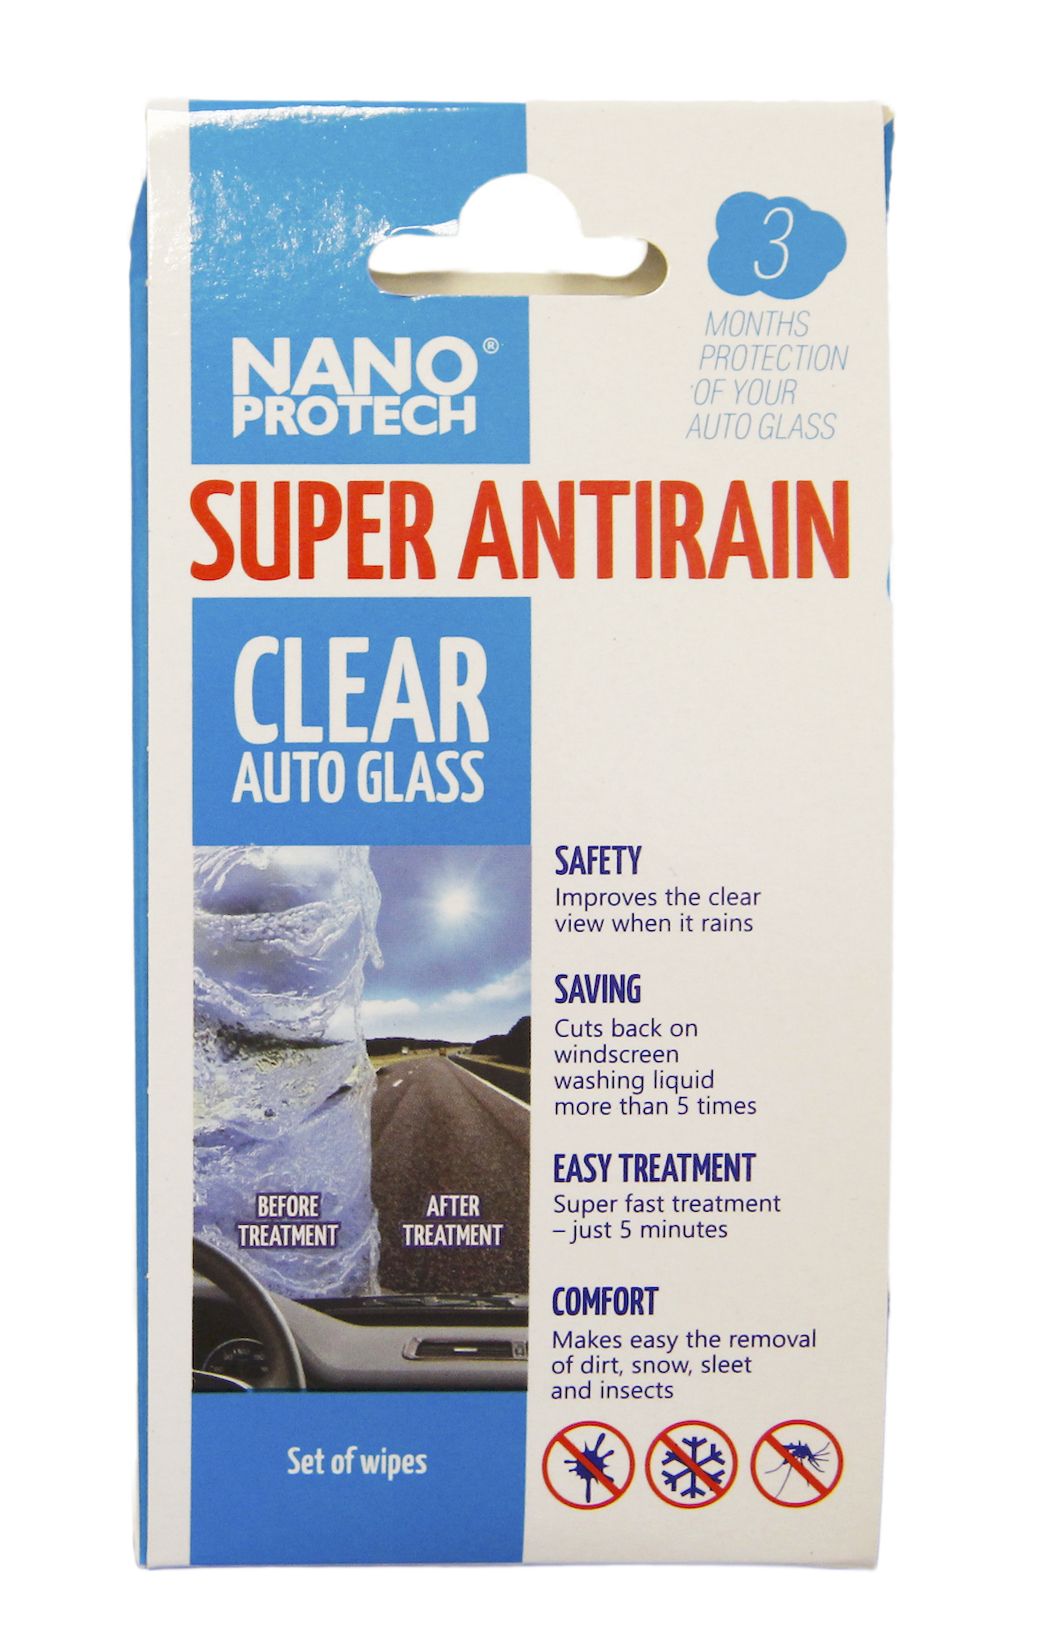 NANOPROTECH Super Antirain * Speciální nanoubrousky,vytvářející efekt neviditelných stěračů.